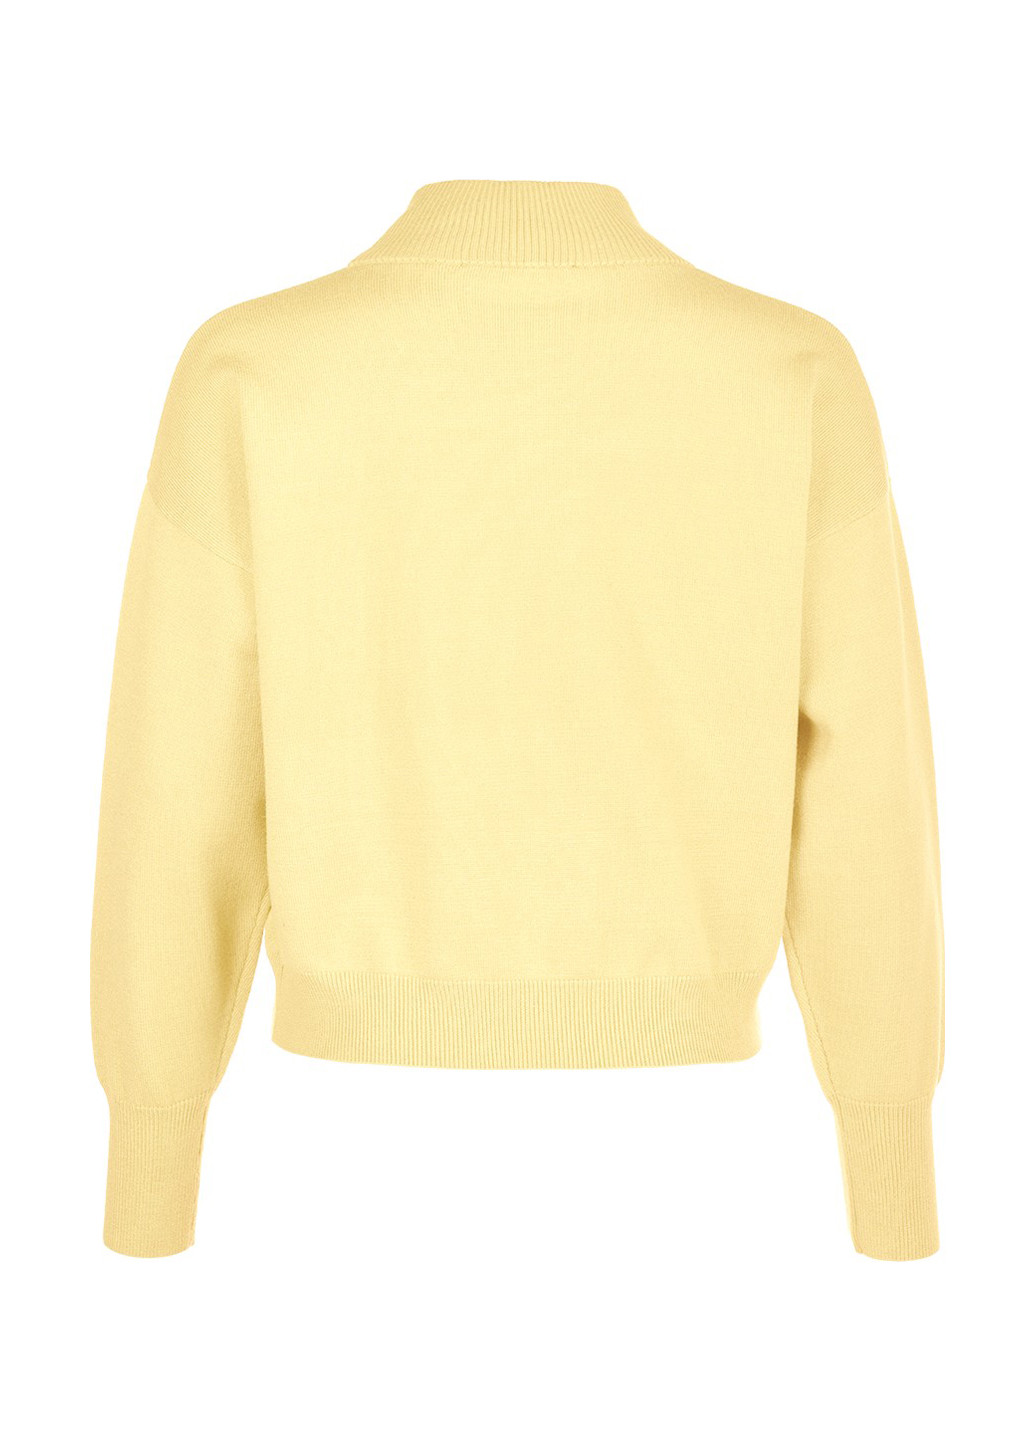 Желтый демисезонный свитер LOVE REPUBLIC